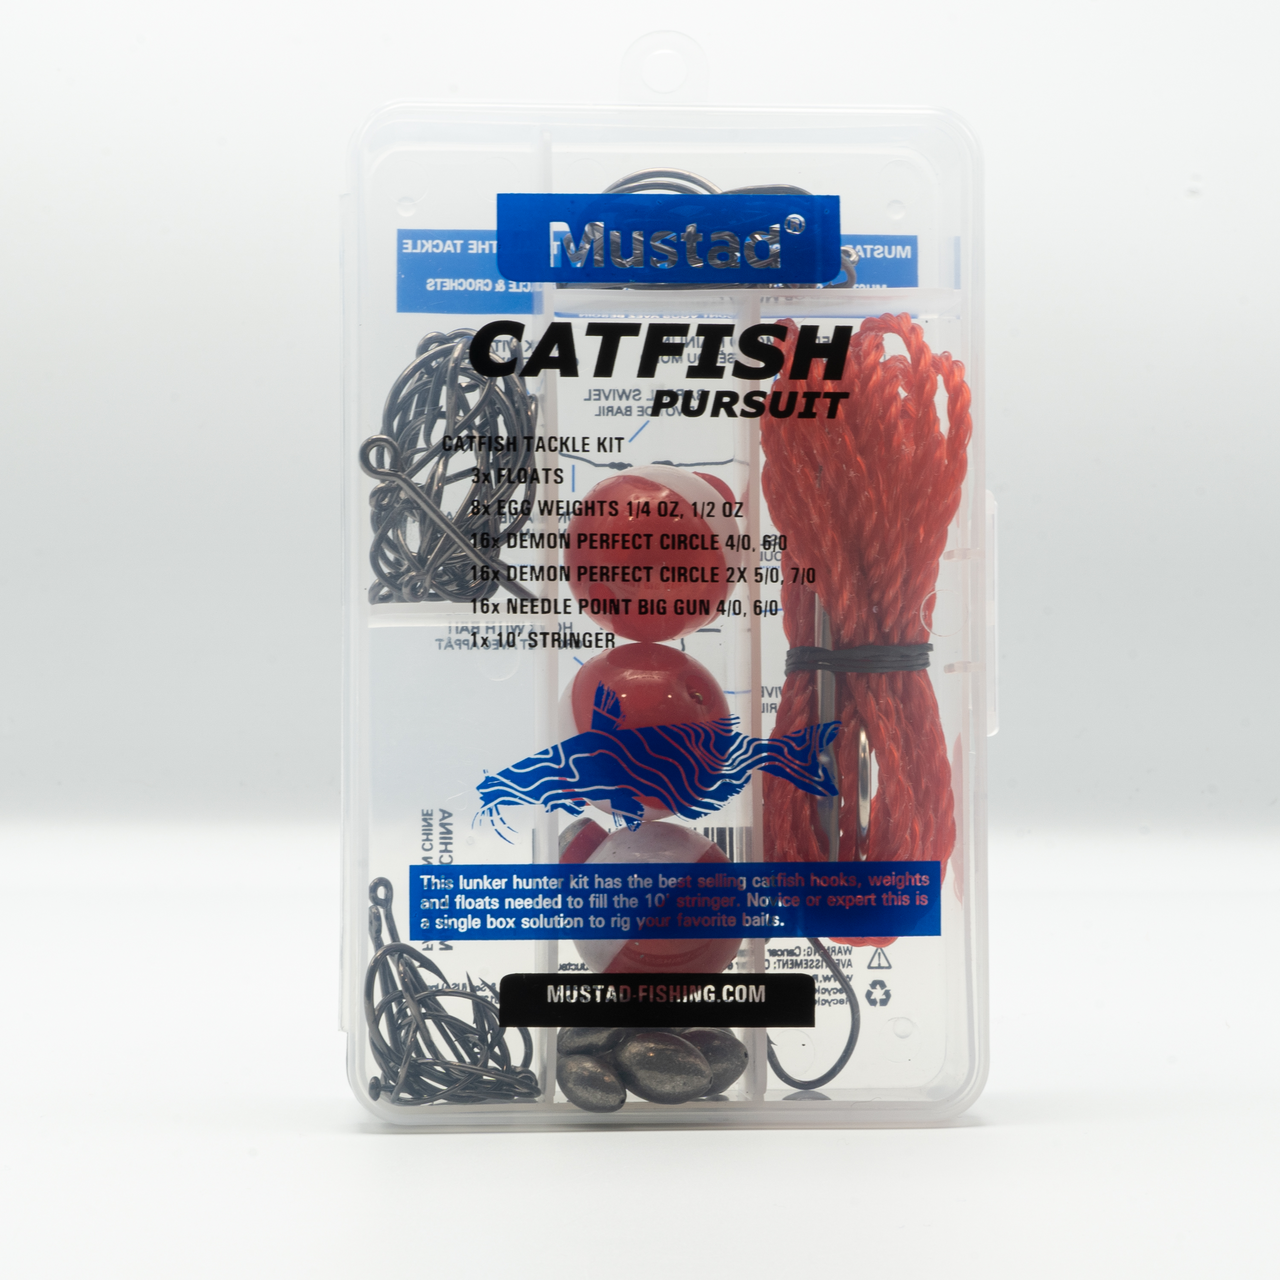 Catfish Pursuit Starter Kit - Multi - Ramsey Outdoor